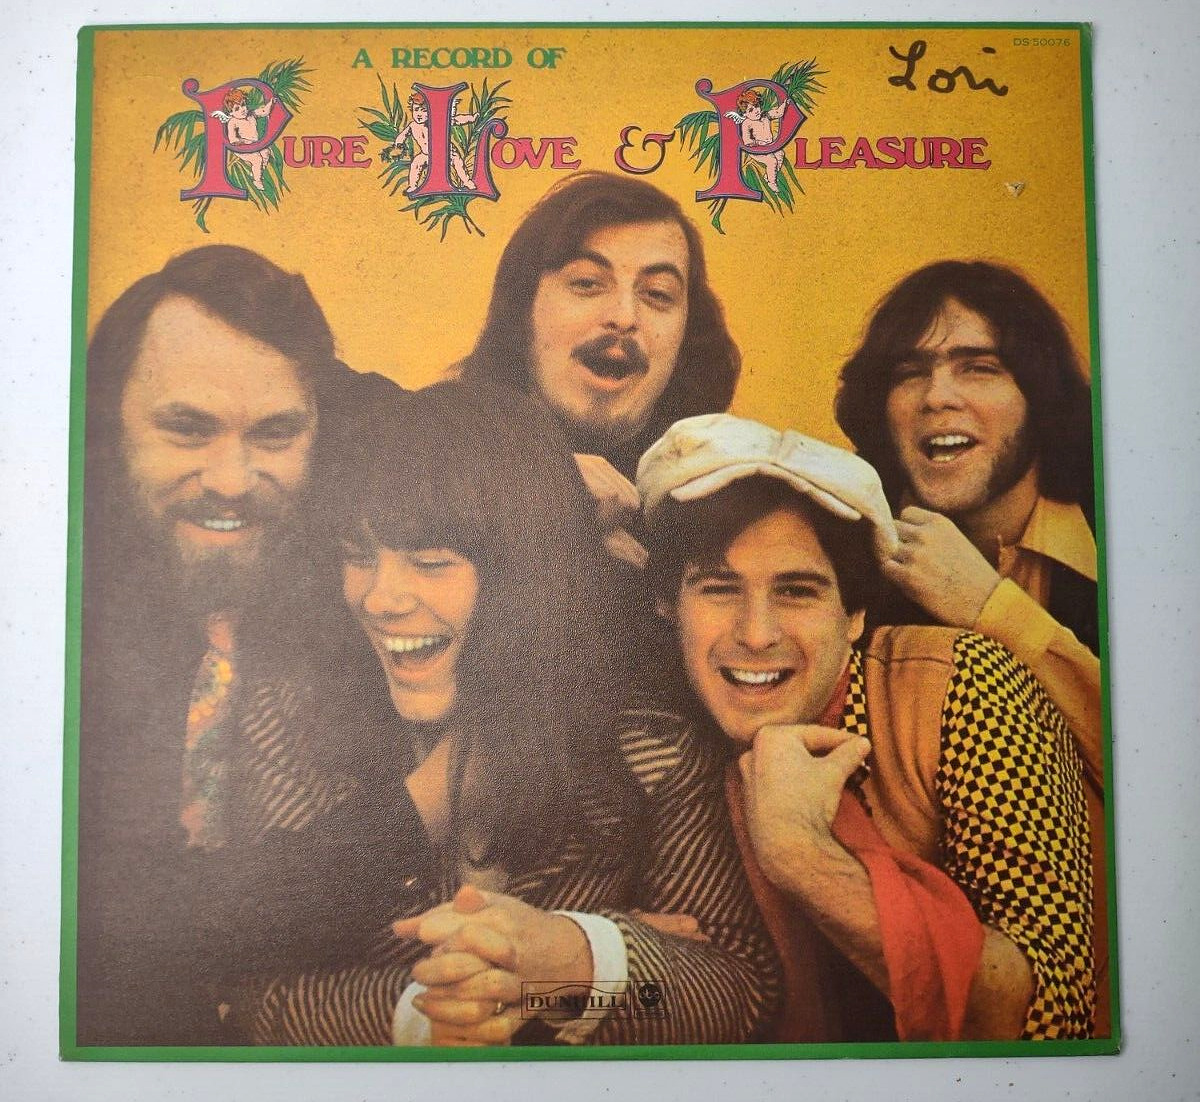 Vintage A Record of Pure Love & Pleasure 1970 Rock Pop Vinyl